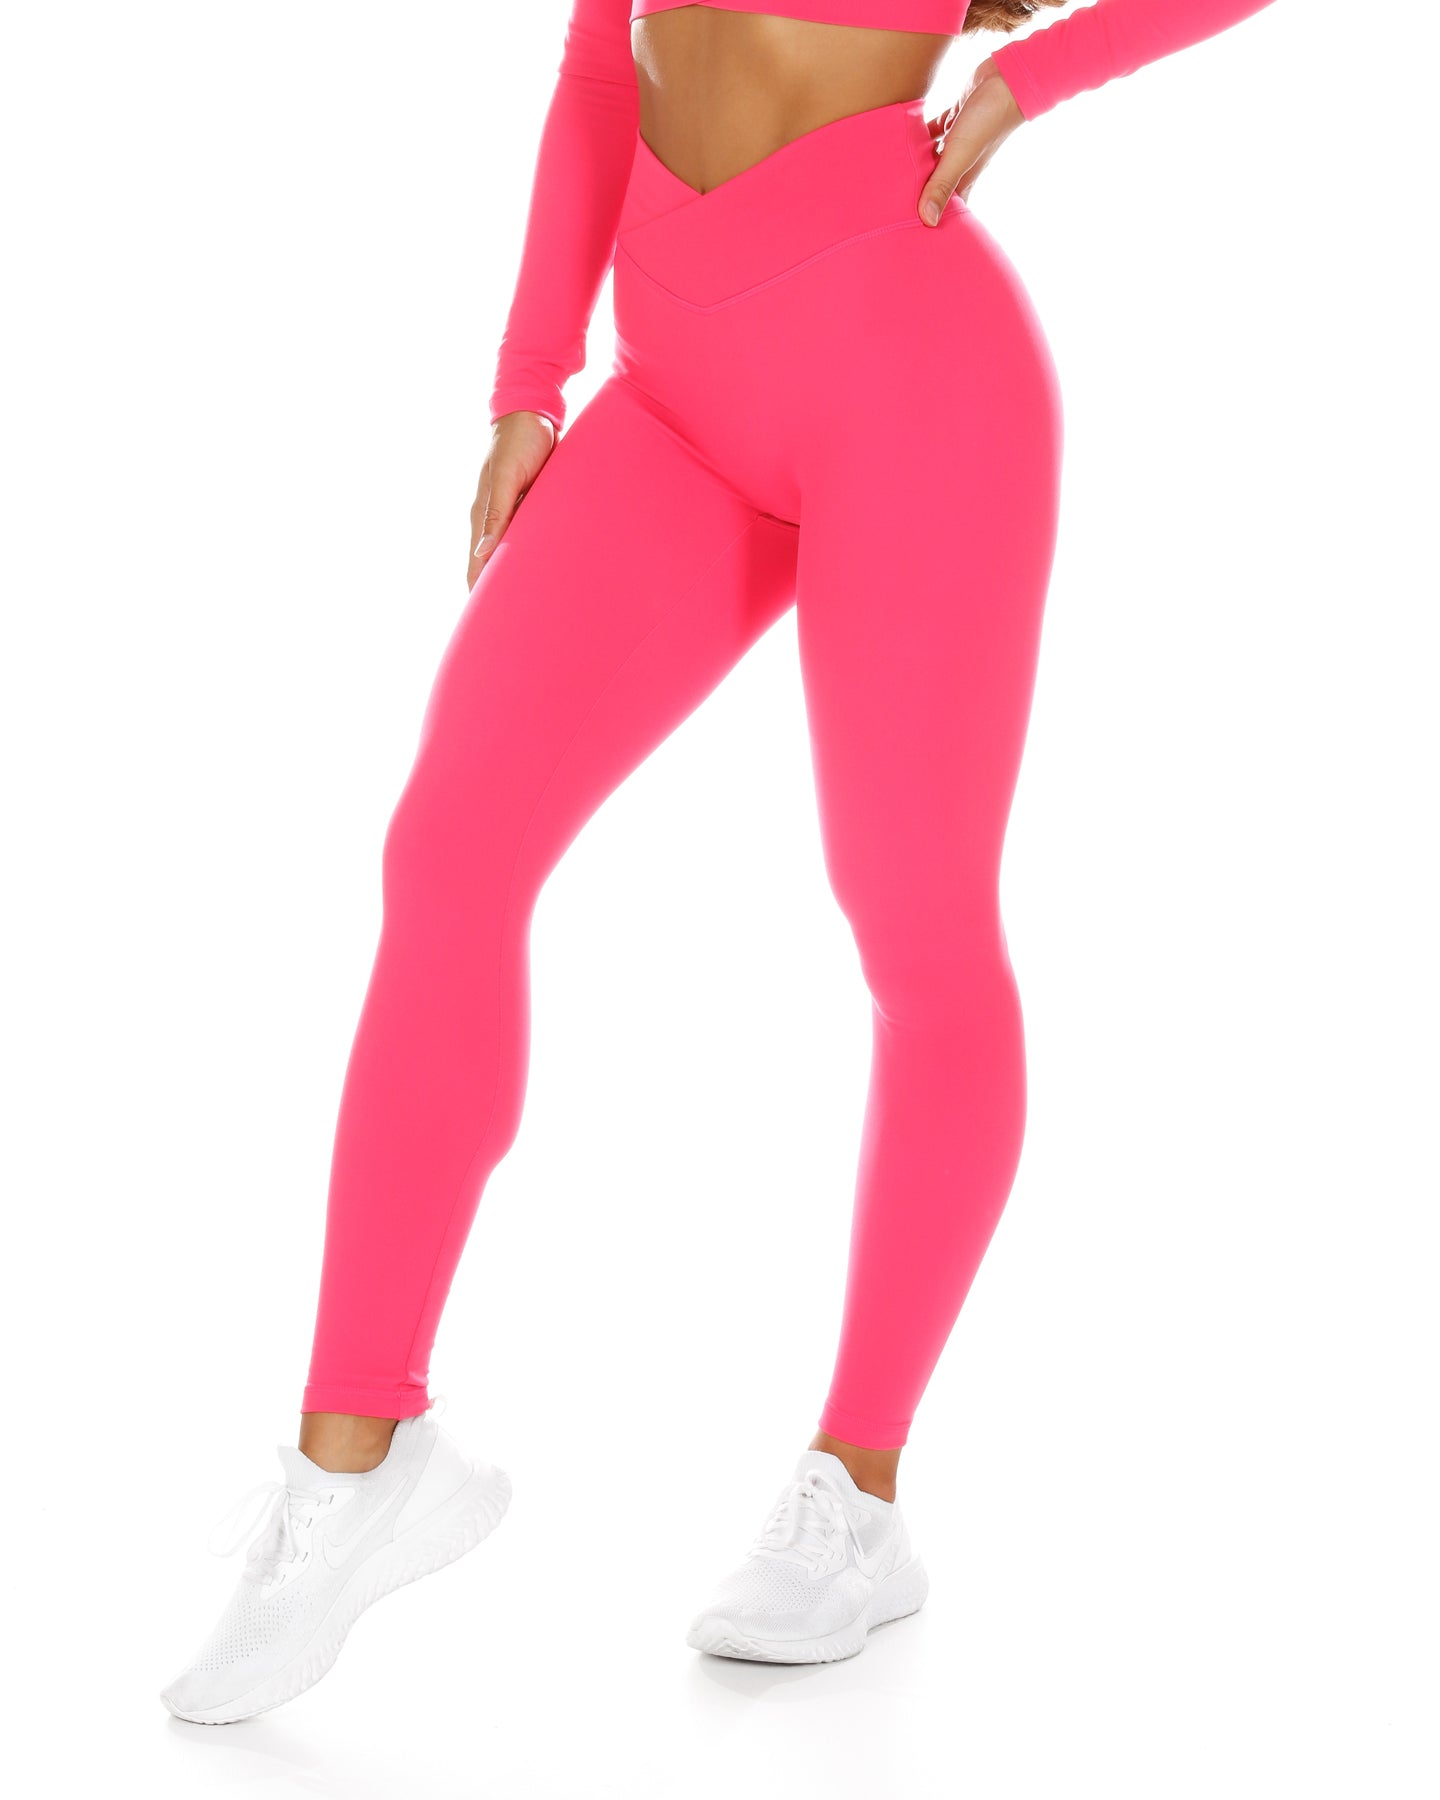 Buy SKNZ Shim Pink Ultrasuave High Waisted Legging online